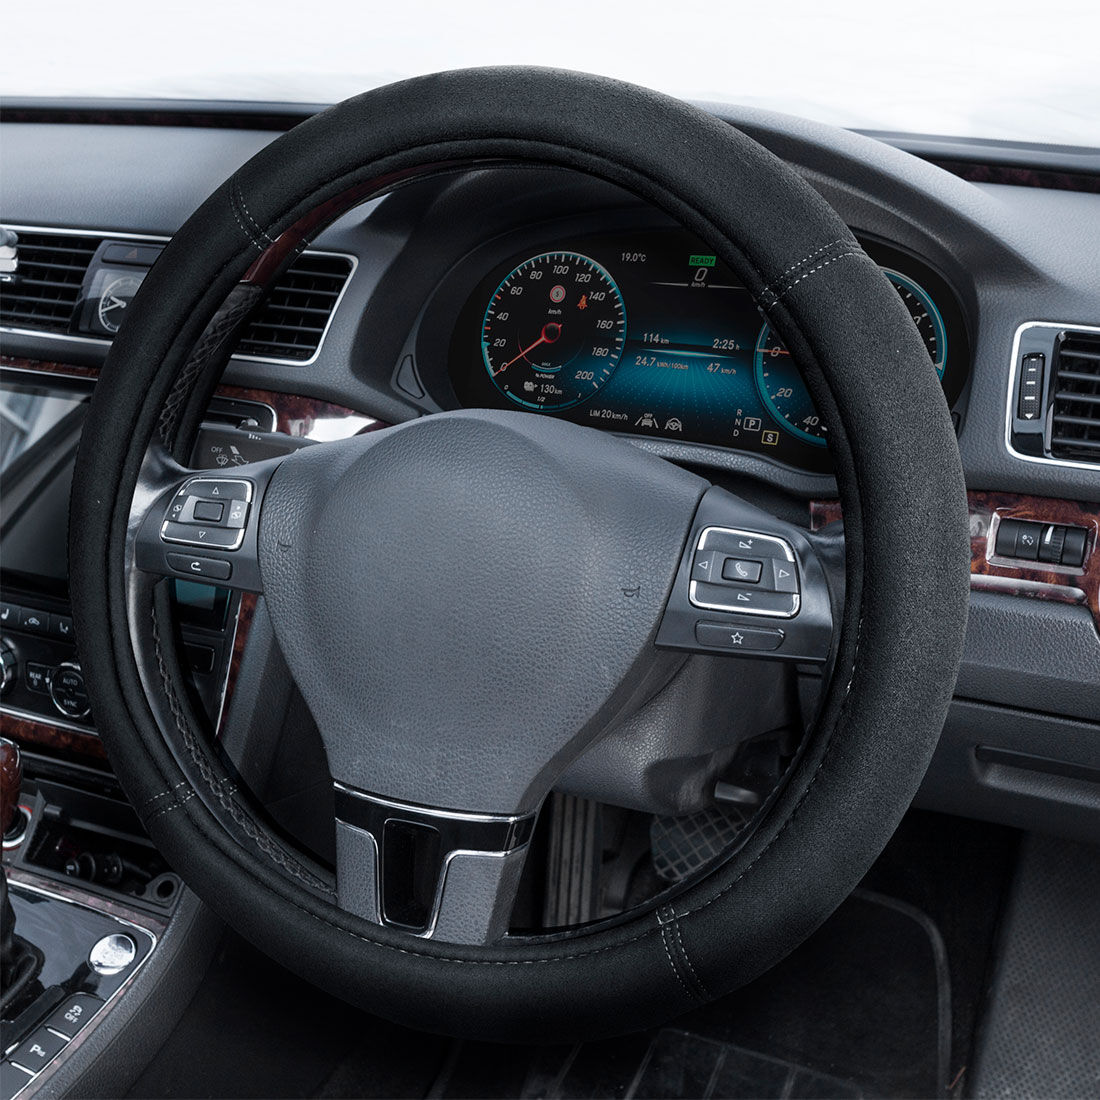 SCA Suede Velour Steering Wheel Cover Black 380mm Diameter, , scaau_hi-res